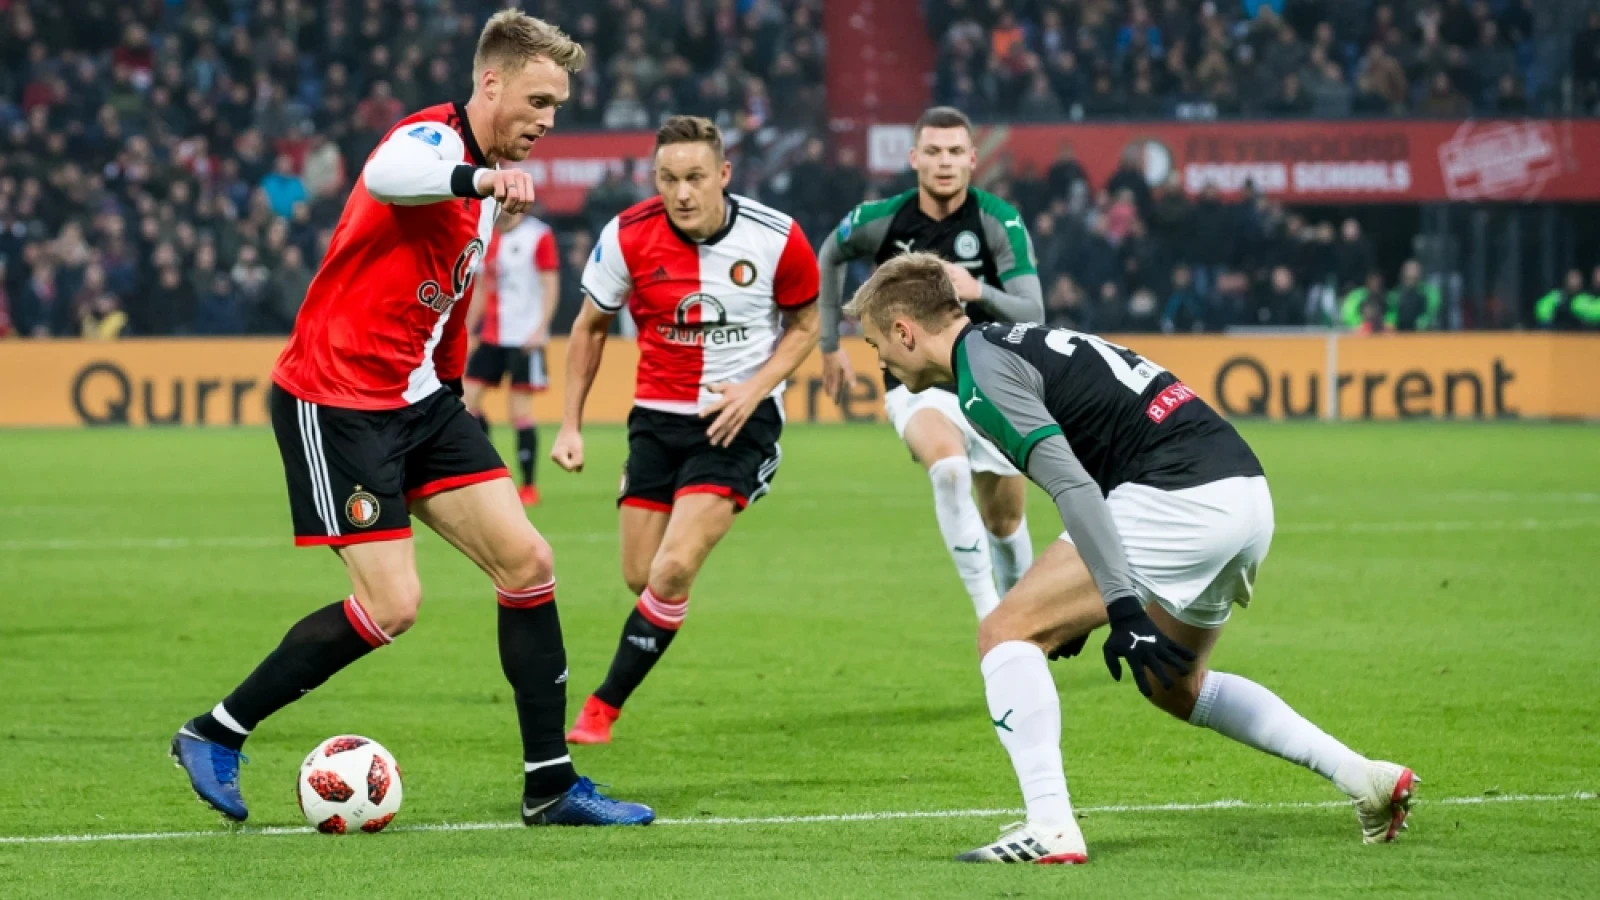 LIVE | Feyenoord - FC Groningen 1-0 | Einde wedstrijd